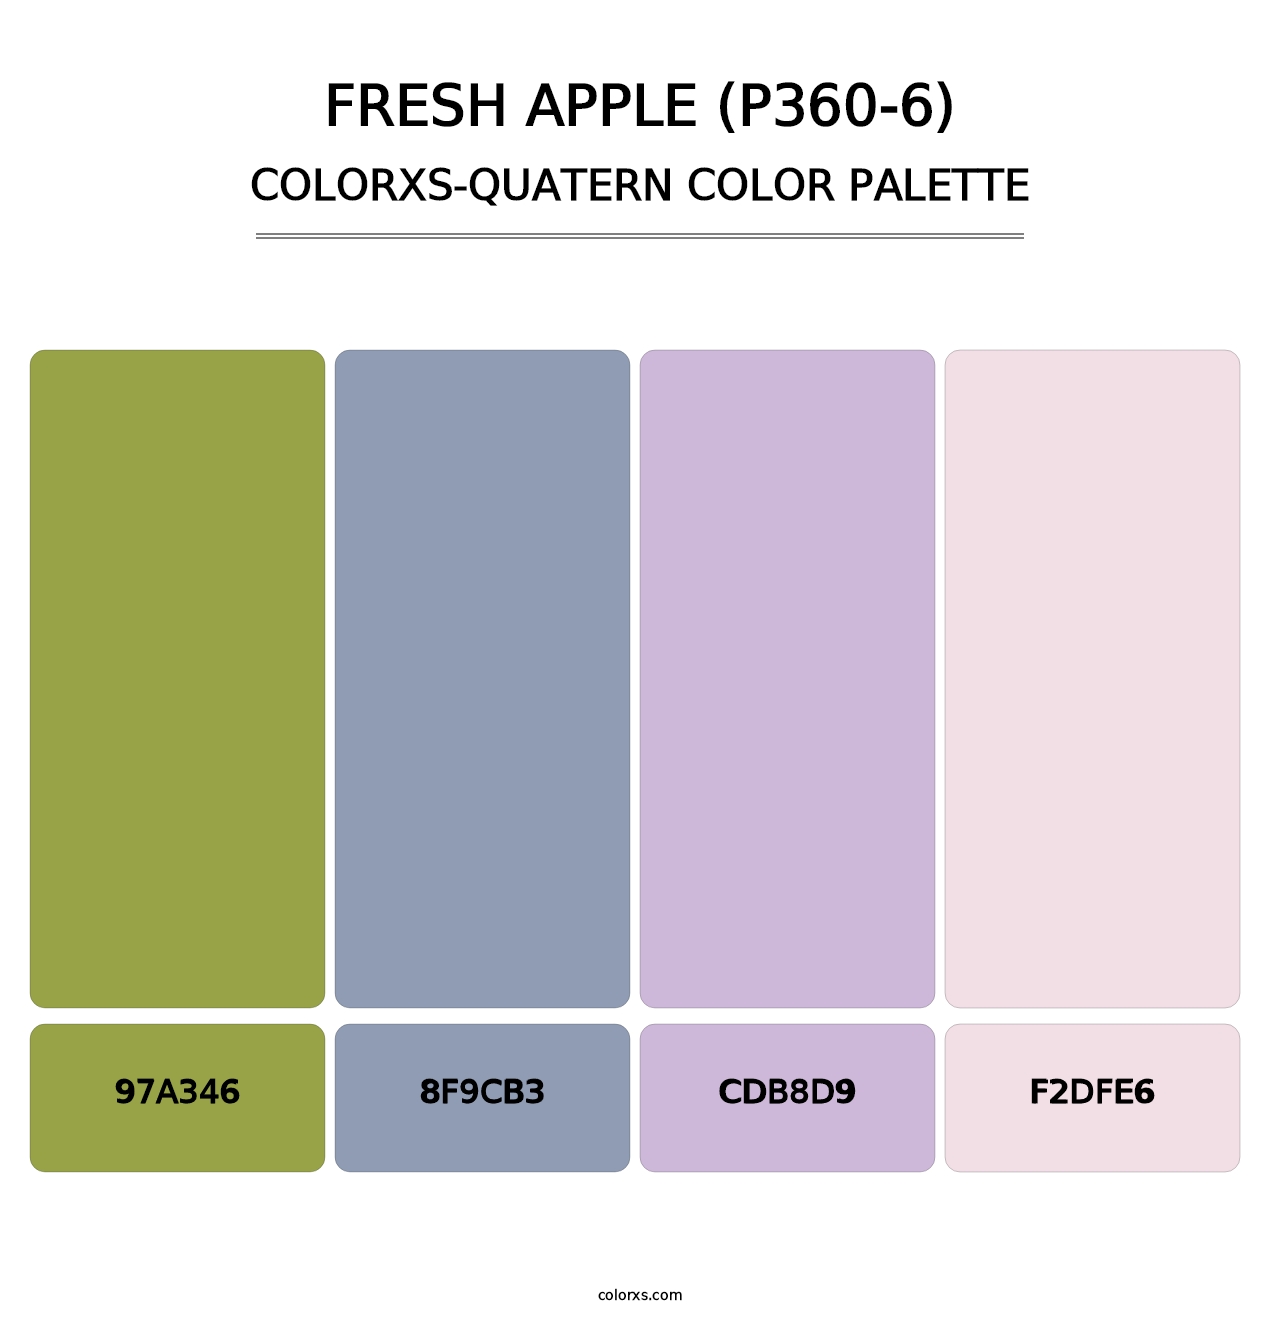 Fresh Apple (P360-6) - Colorxs Quatern Palette